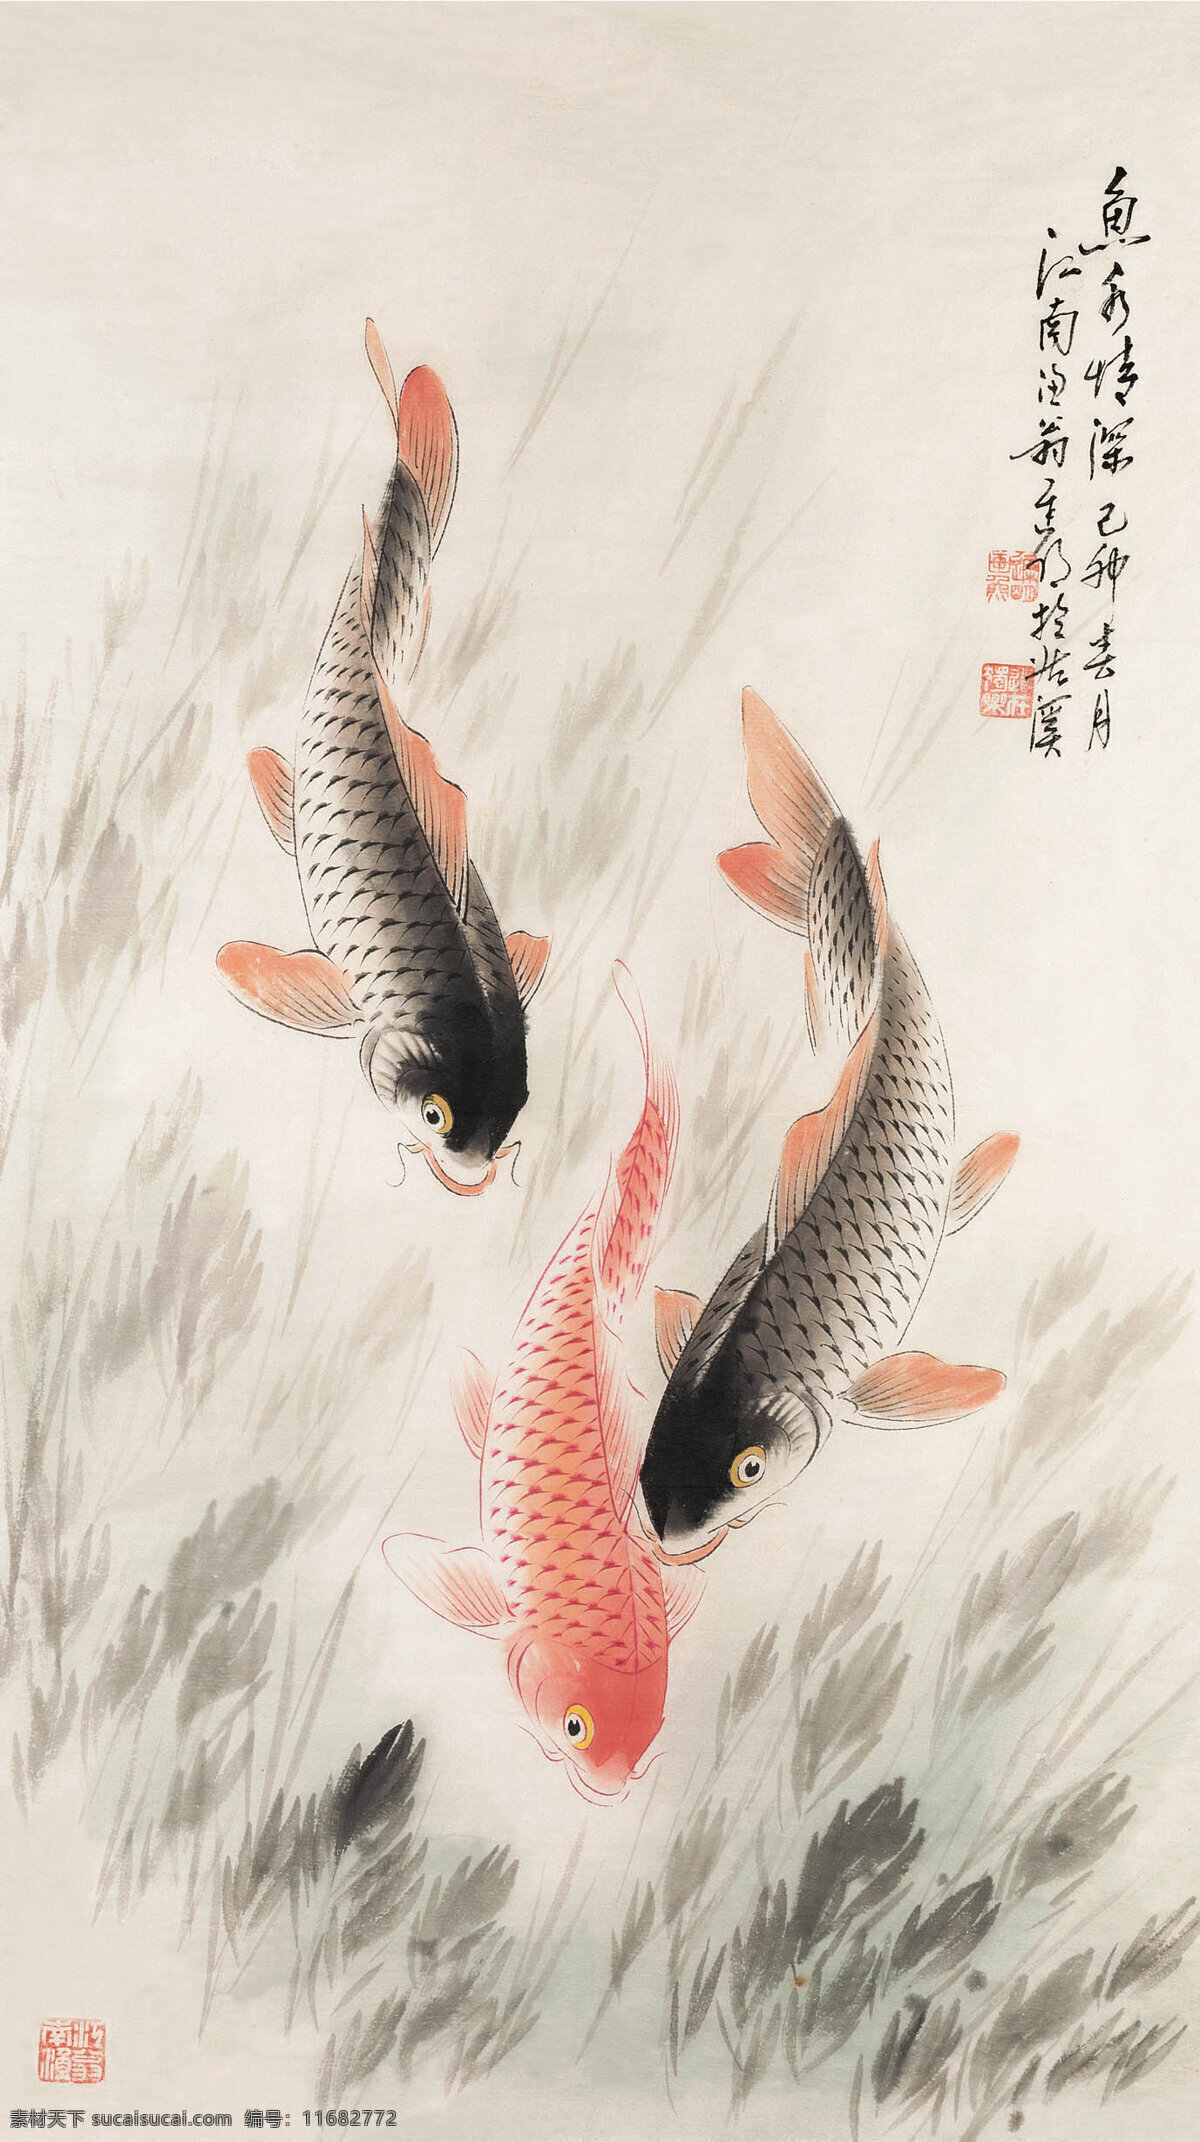 如鱼得水 三只鲤鱼 在水中 嬉戏 红与黑 水草 水墨画 中国古代画 中国古画 绘画书法 文化艺术